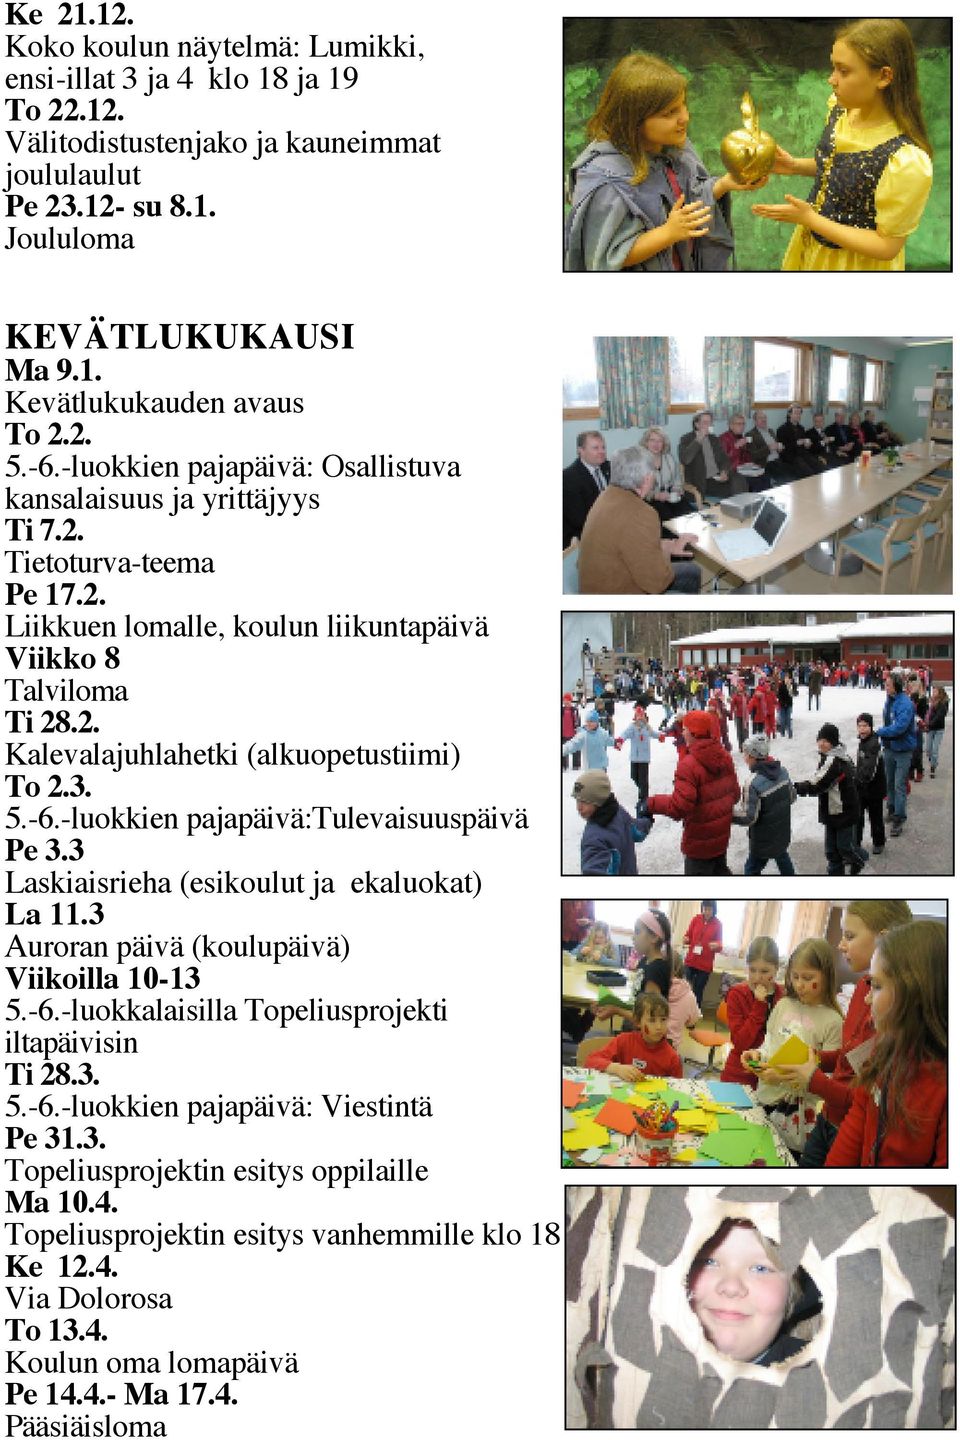 3. 5.-6.-luokkien pajapäivä:tulevaisuuspäivä Pe 3.3 Laskiaisrieha (esikoulut ja ekaluokat) La 11.3 Auroran päivä (koulupäivä) Viikoilla 10-13 5.-6.-luokkalaisilla Topeliusprojekti iltapäivisin Ti 28.